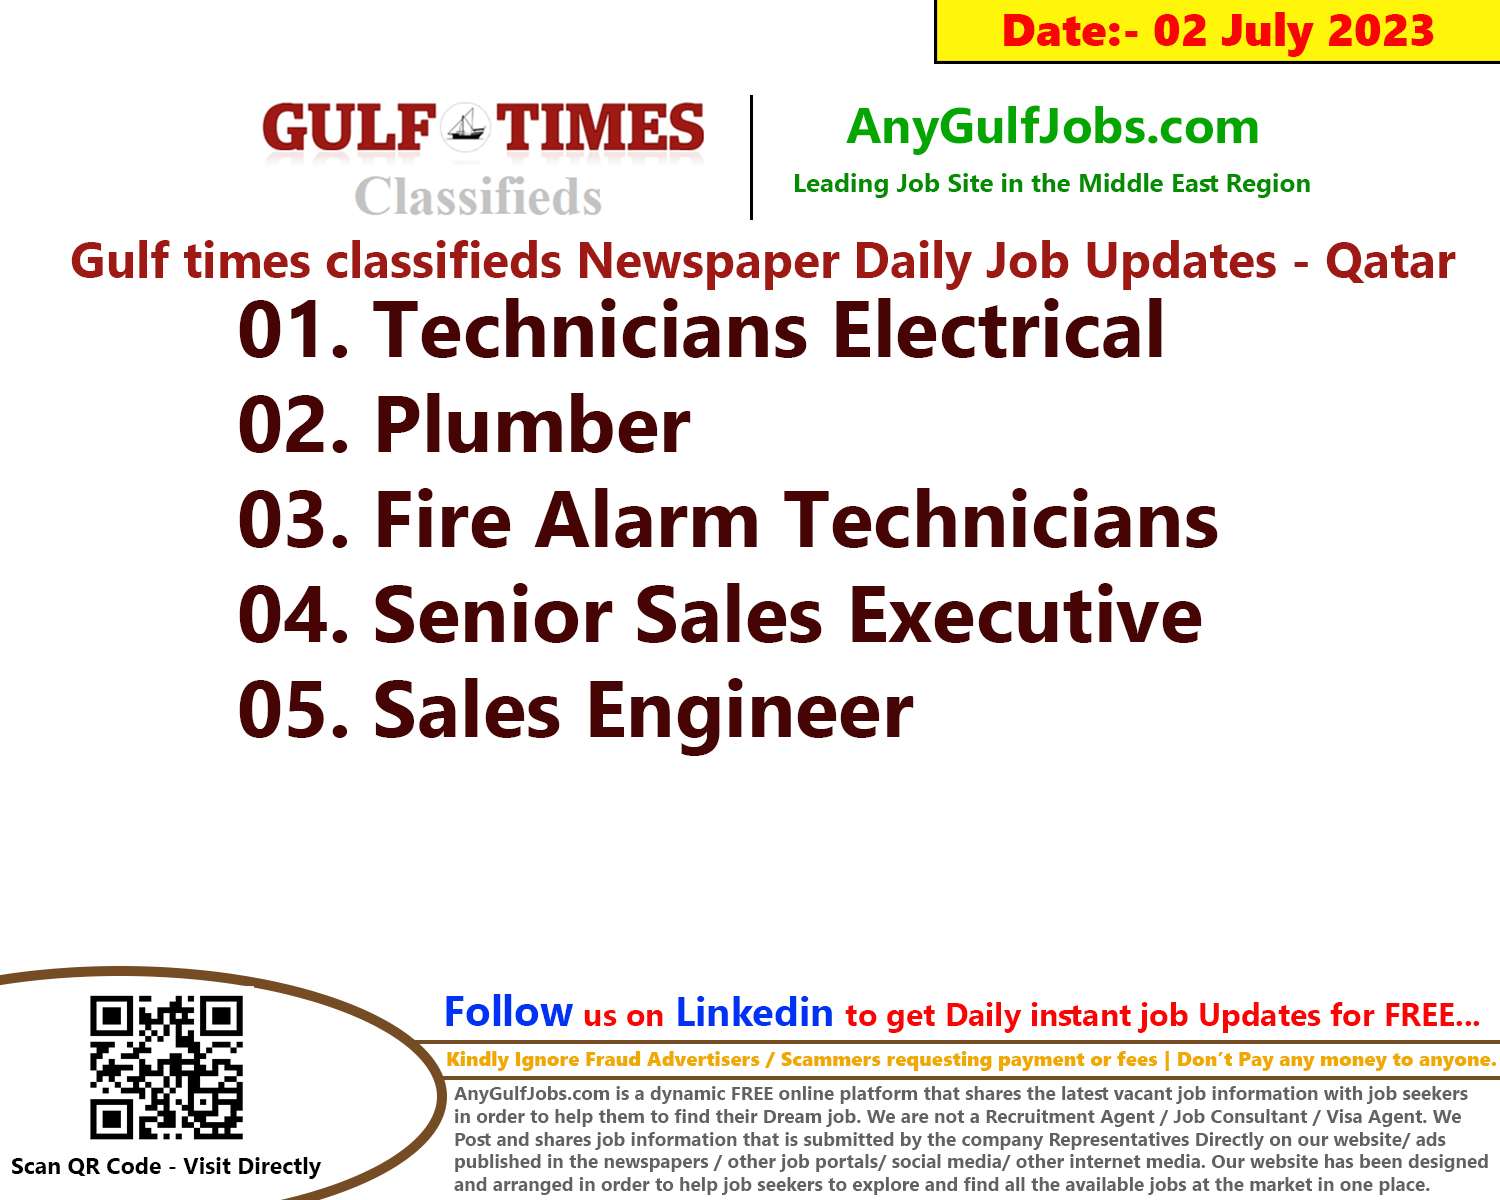 Gulf times classifieds Job Vacancies Qatar - 02 July 2023